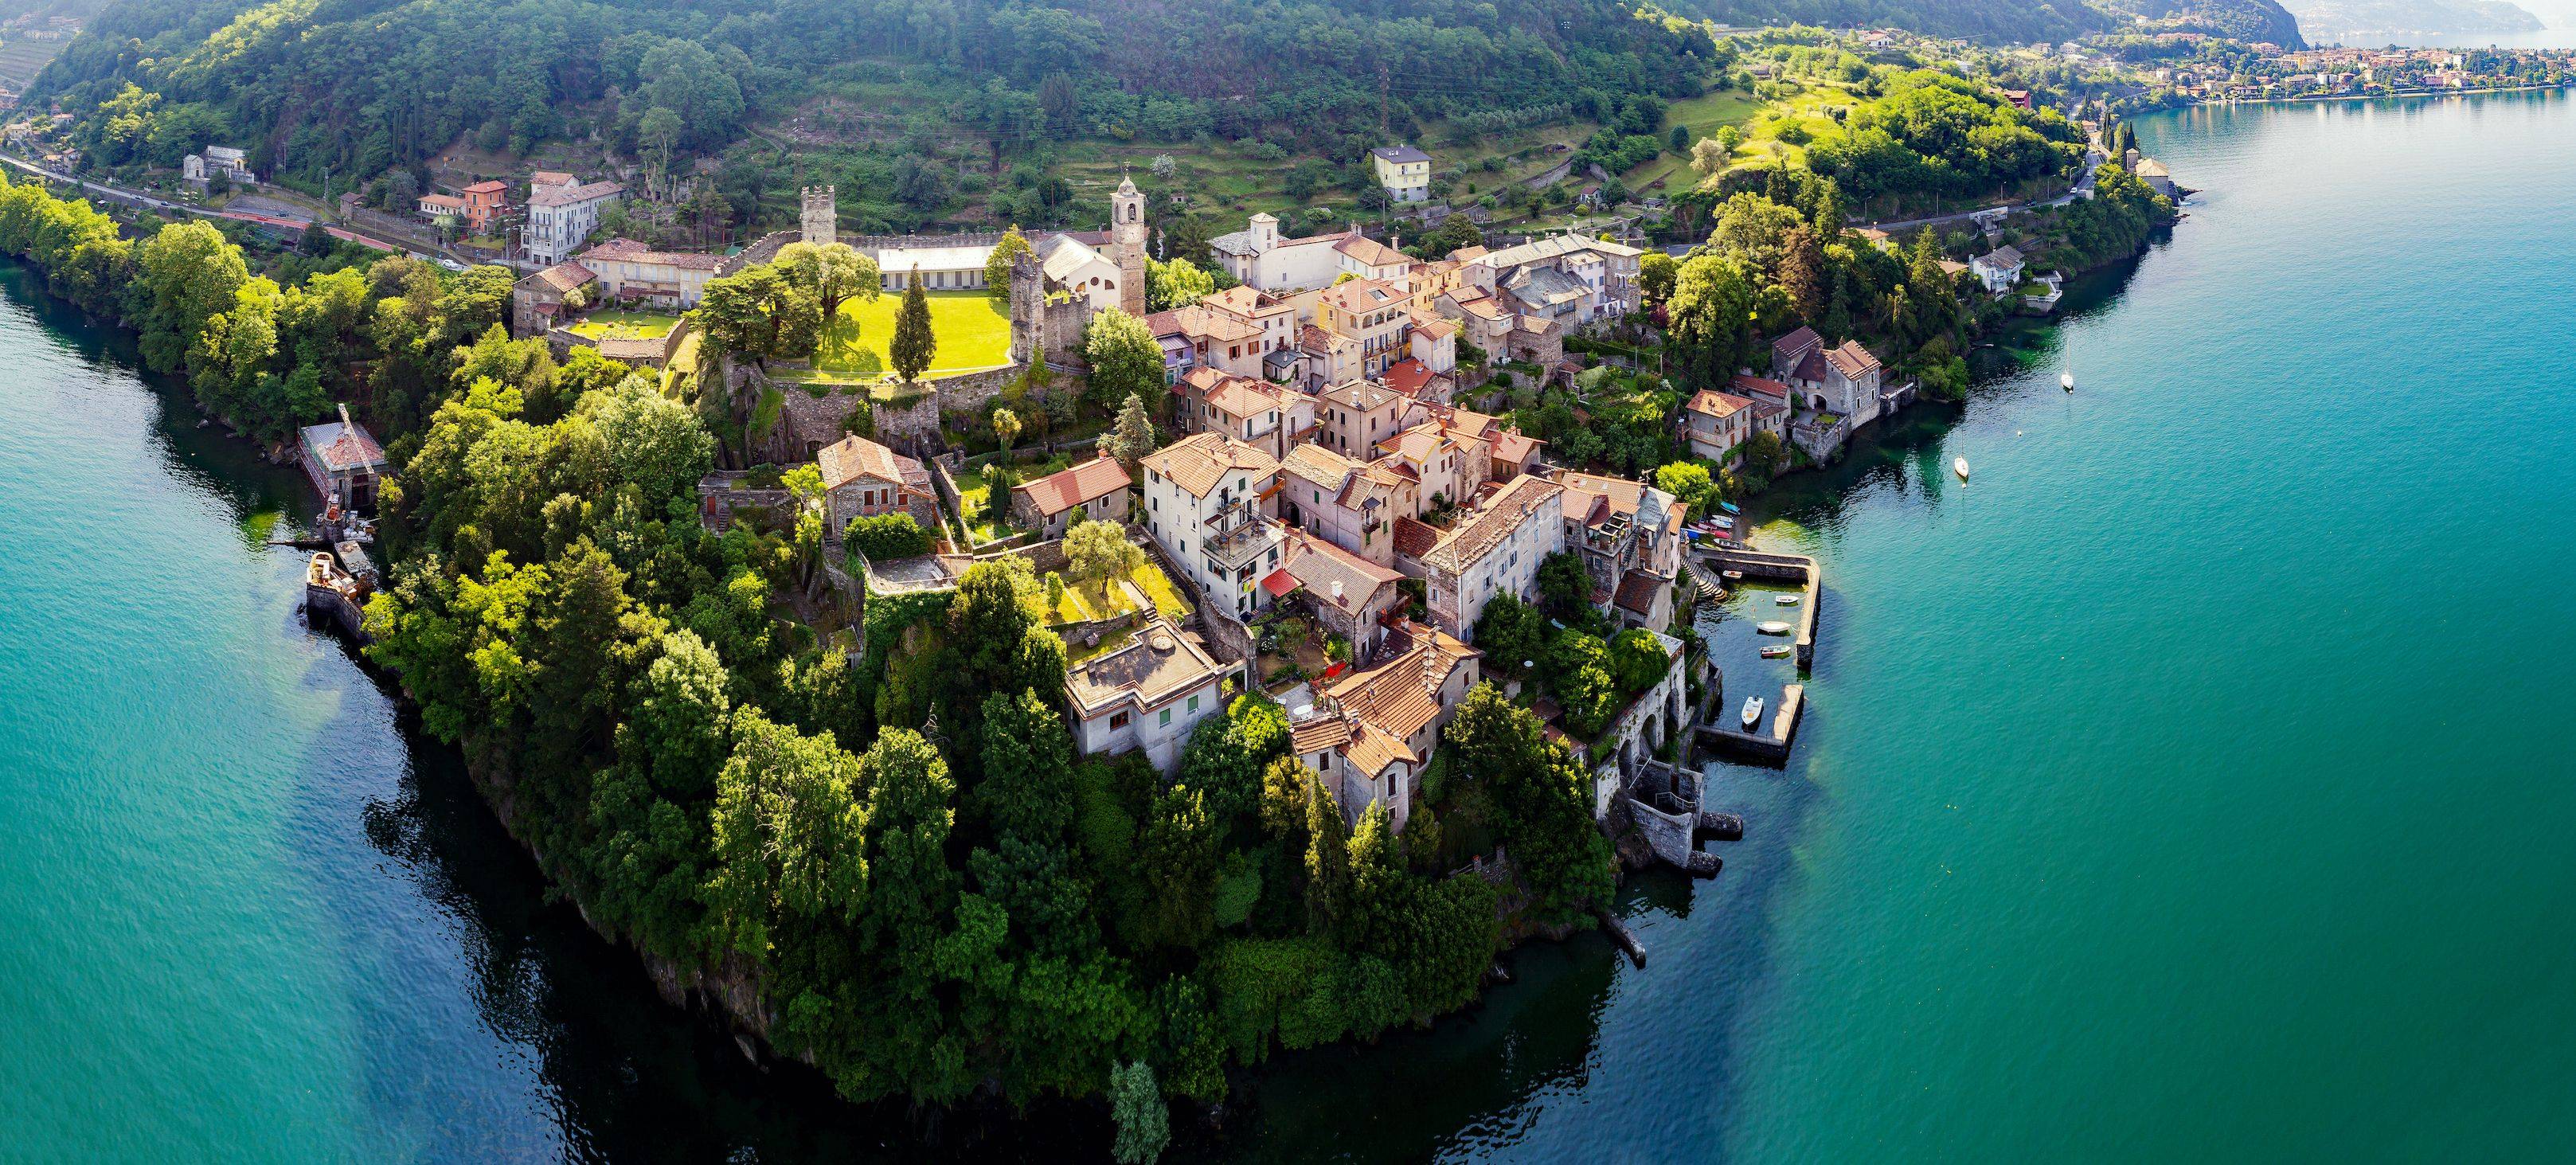 Trekking leggero sul Lago di Como tra gastronomia e paesaggi